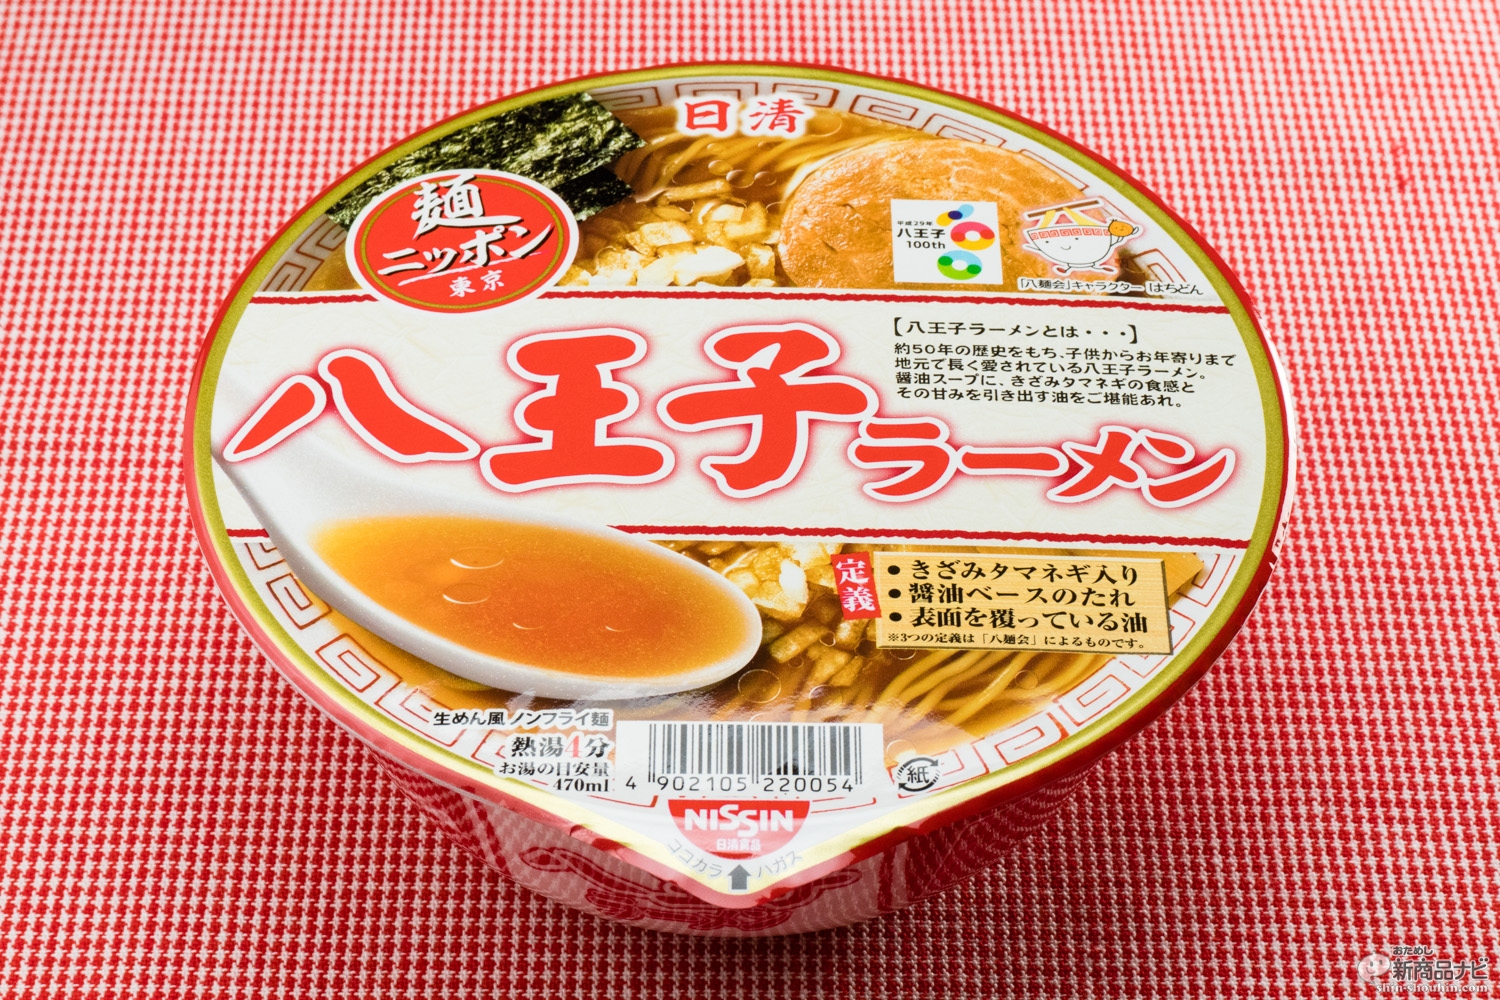 おためし新商品ナビ Blog Archive 刻みタマネギのトッピングとぎっとりラードが特徴の 日清麺ニッポン 八王子ラーメン の味わいとは